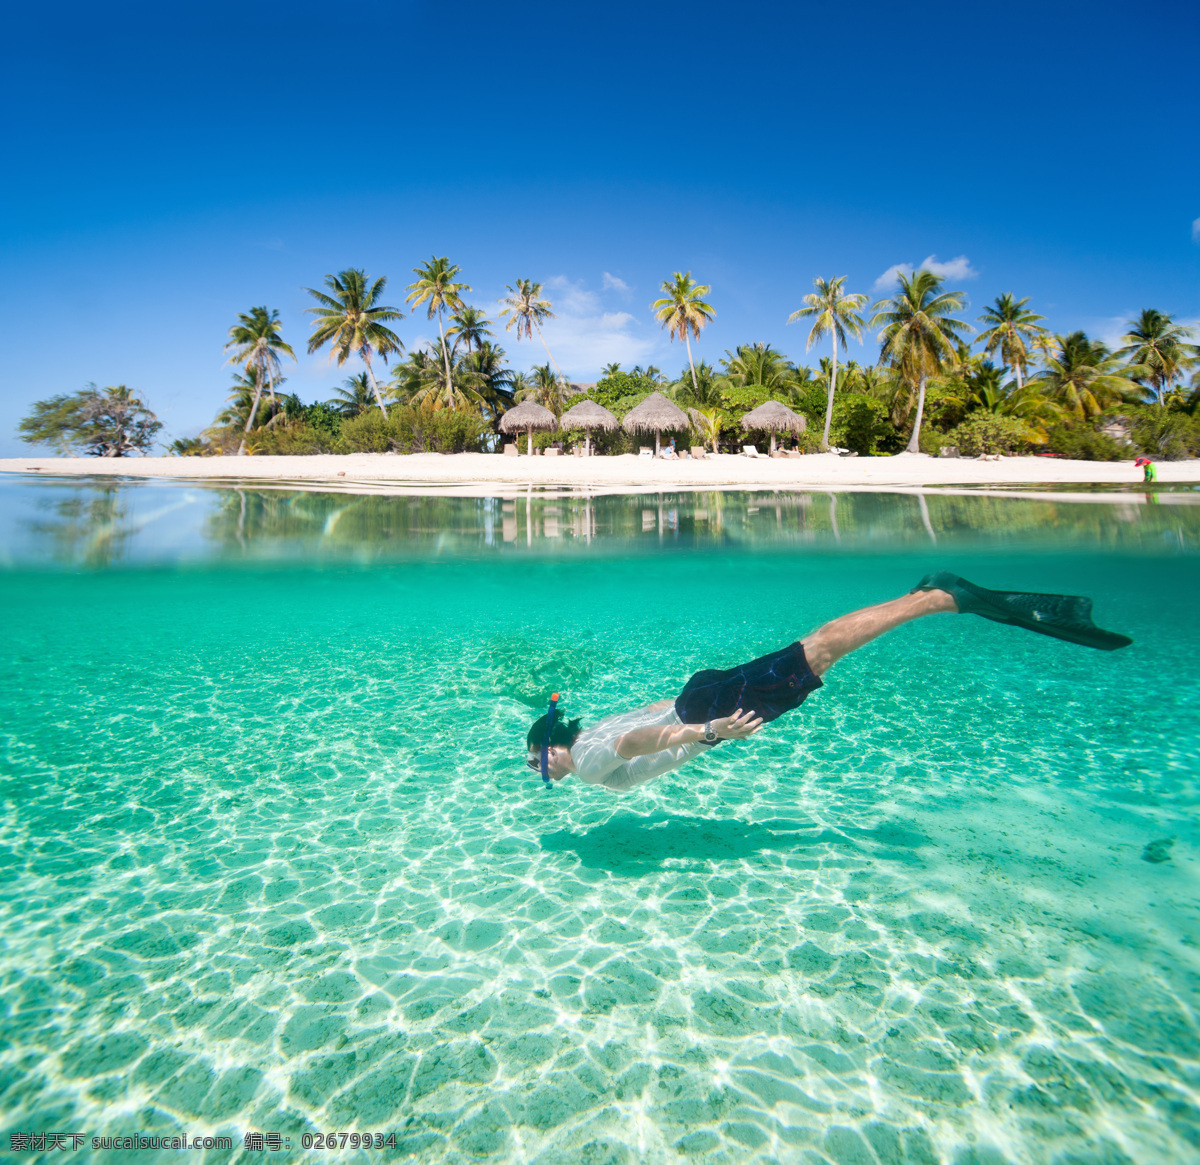 海滩 沙滩 海边 椰子树 潜水 热带海滩 旅游 度假 热带 蓝天 白云 大海 海洋 自然风景 自然景观 国外旅游 旅游摄影